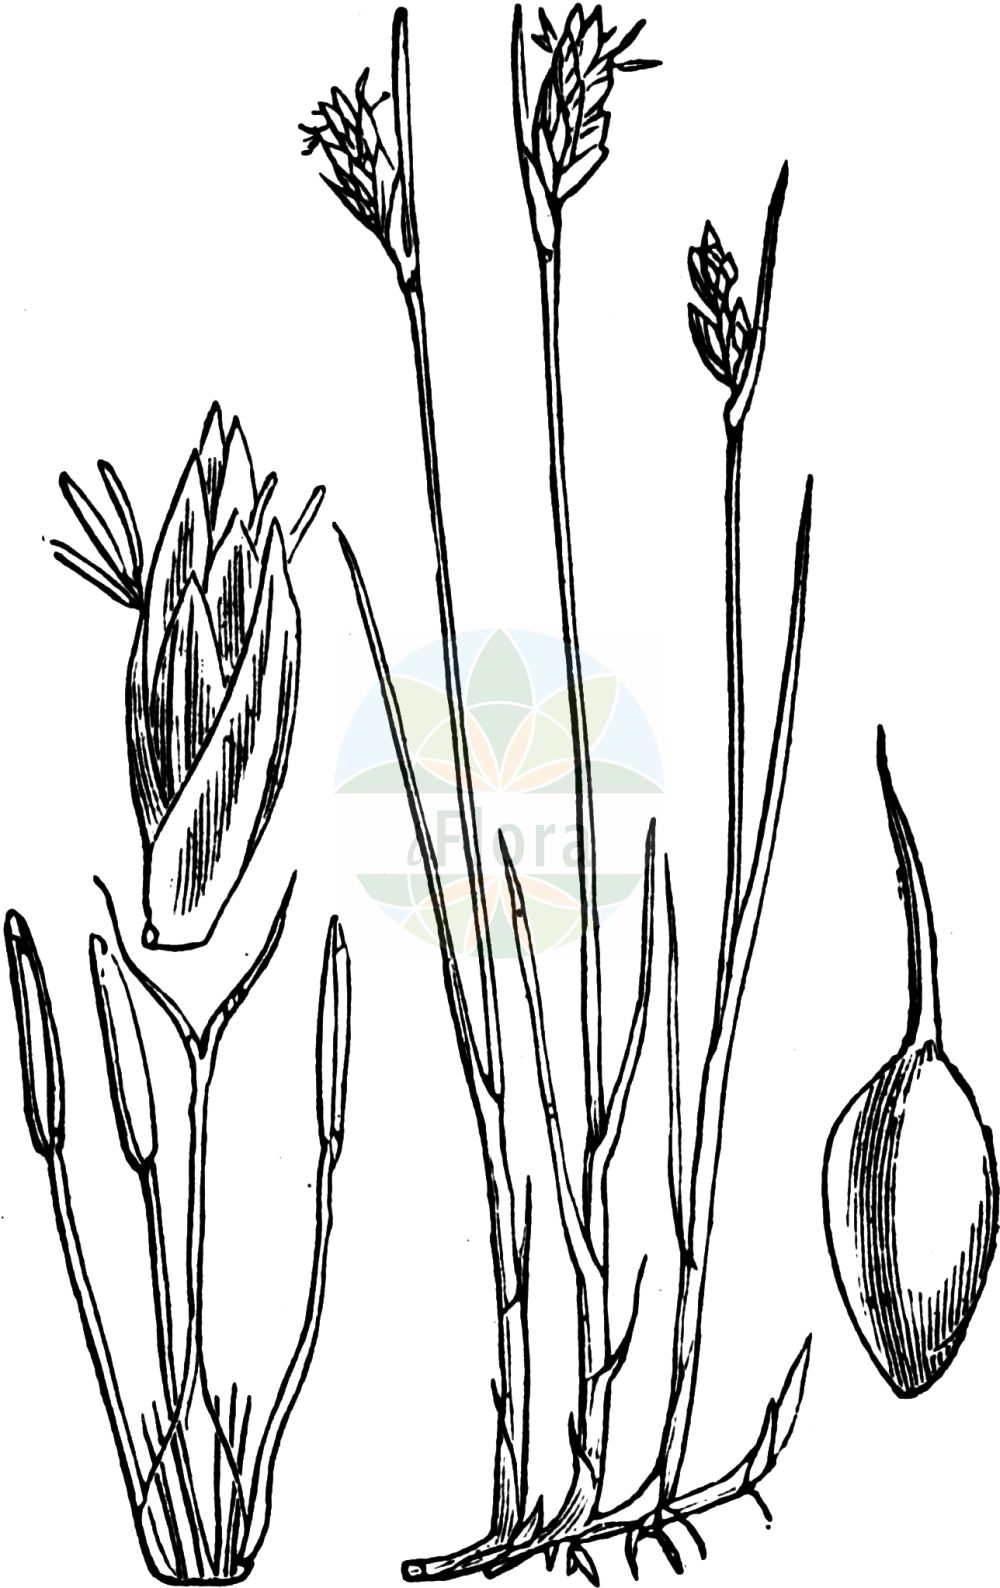 Historische Abbildung von Blysmopsis rufa (Rote Quellbinse - Saltmarsh Flat-Sedge). Das Bild zeigt Blatt, Bluete, Frucht und Same. ---- Historical Drawing of Blysmopsis rufa (Rote Quellbinse - Saltmarsh Flat-Sedge). The image is showing leaf, flower, fruit and seed.(Blysmopsis rufa,Rote Quellbinse,Saltmarsh Flat-Sedge,Blysmopsis rufa,Blysmus rufus,Schoenus rufus,Scirpus rufus,Rote Quellbinse,Rotbraunes Quellried,Saltmarsh Flat-Sedge,Red Bulrush,Blysmopsis,Cyperaceae,Sauergräser,Sedge family,Blatt,Bluete,Frucht,Same,leaf,flower,fruit,seed,Fitch et al. (1880))